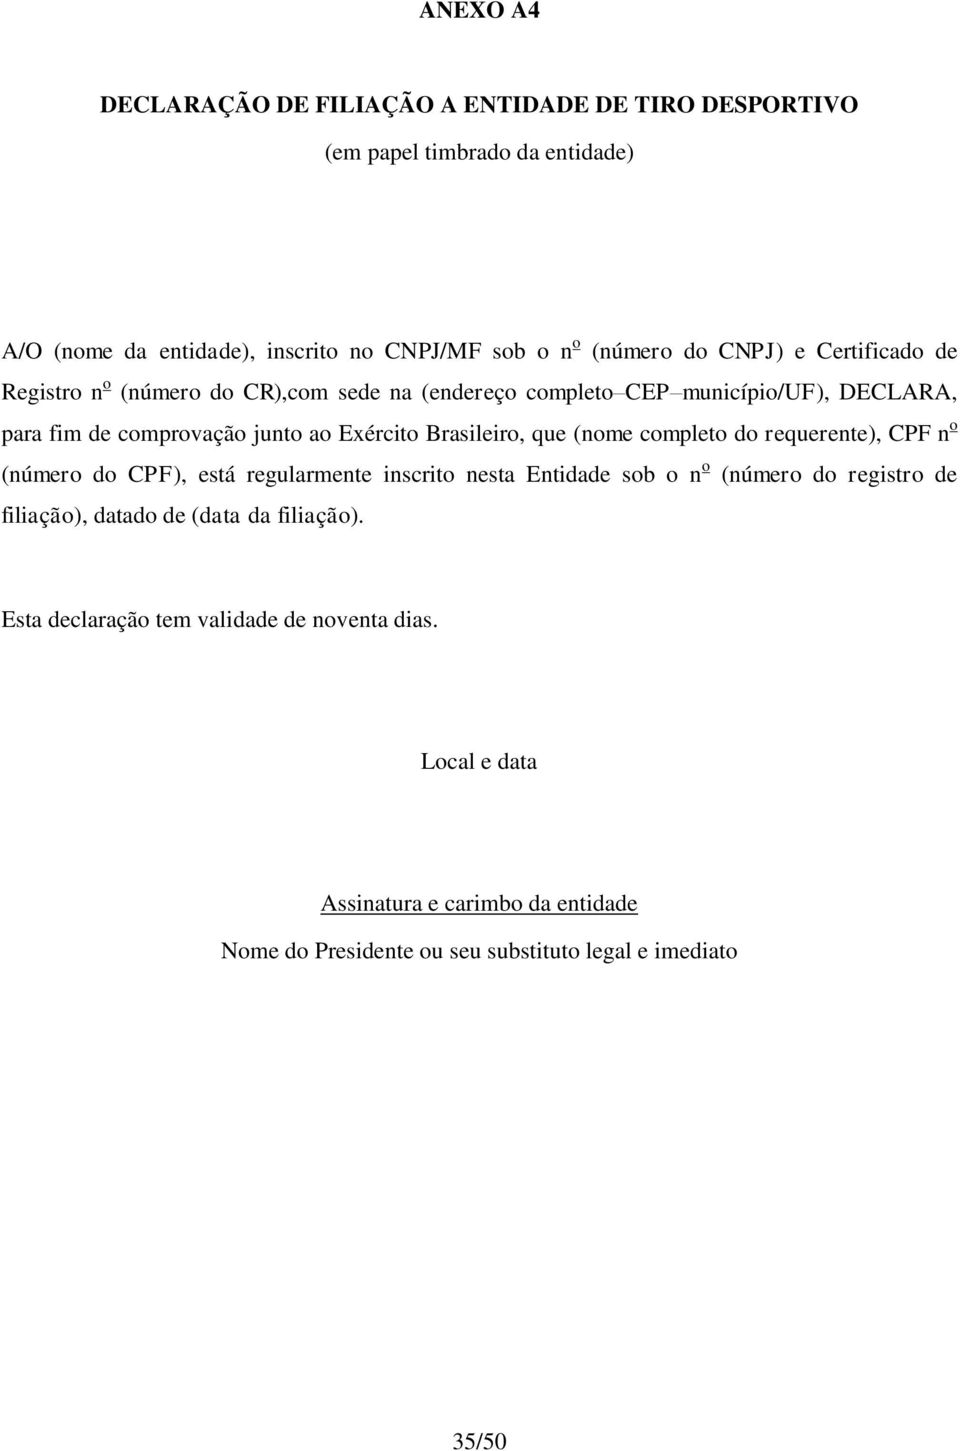 Brasileiro, que (nome completo do requerente), CPF n o (número do CPF), está regularmente inscrito nesta Entidade sob o n o (número do registro de filiação),